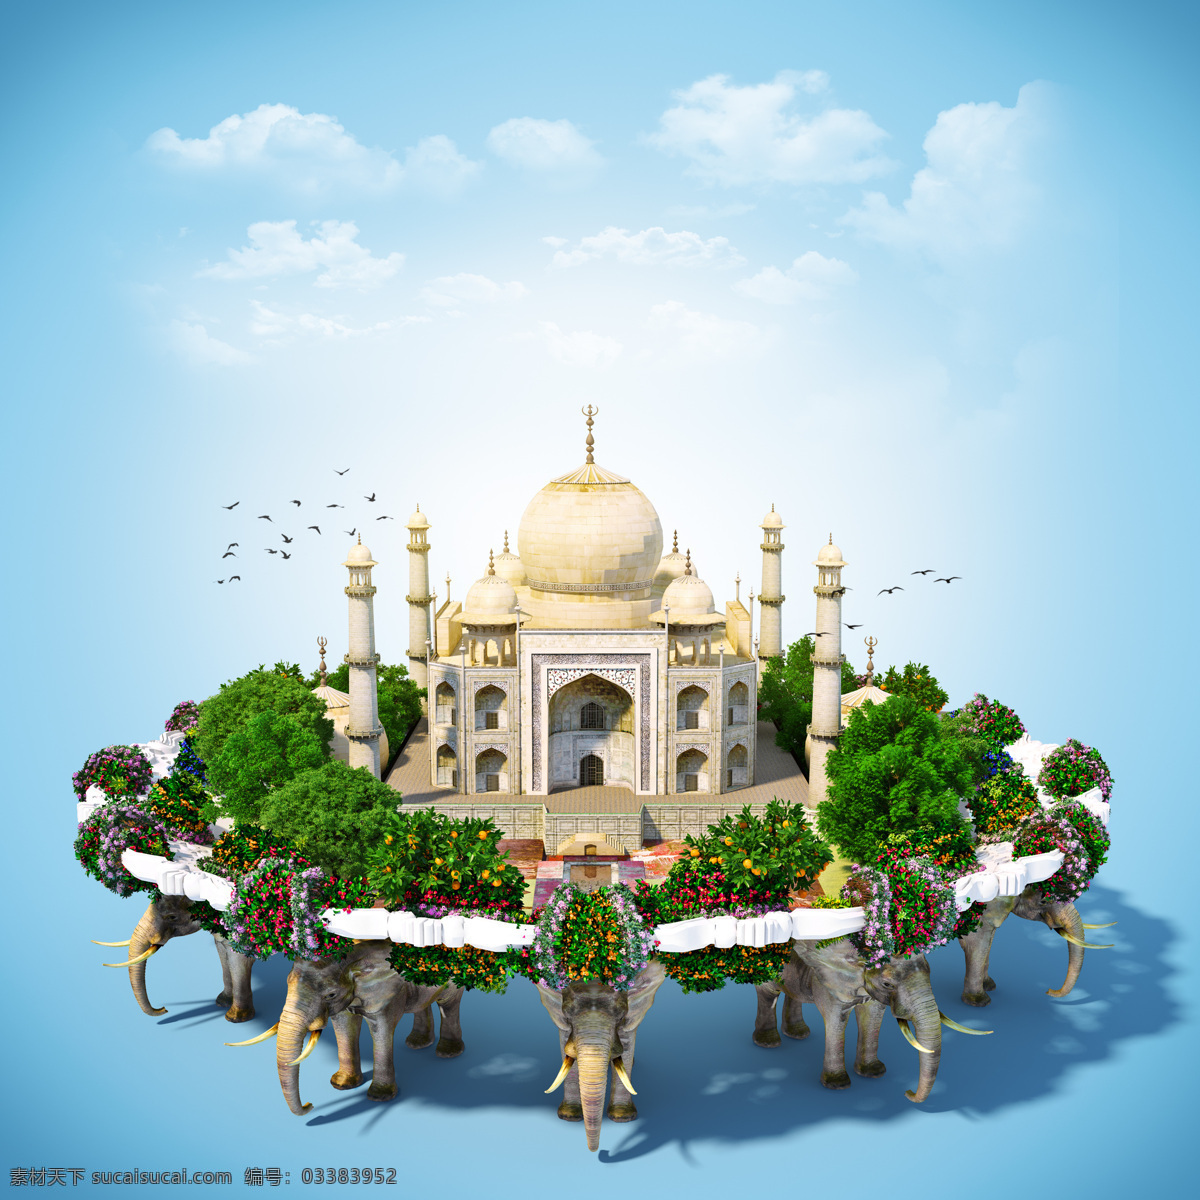 大象与泰姬陵 大象 泰姬陵 建筑风景 印度旅游景点 旅游海报 其他风光 其他类别 生活百科 青色 天蓝色